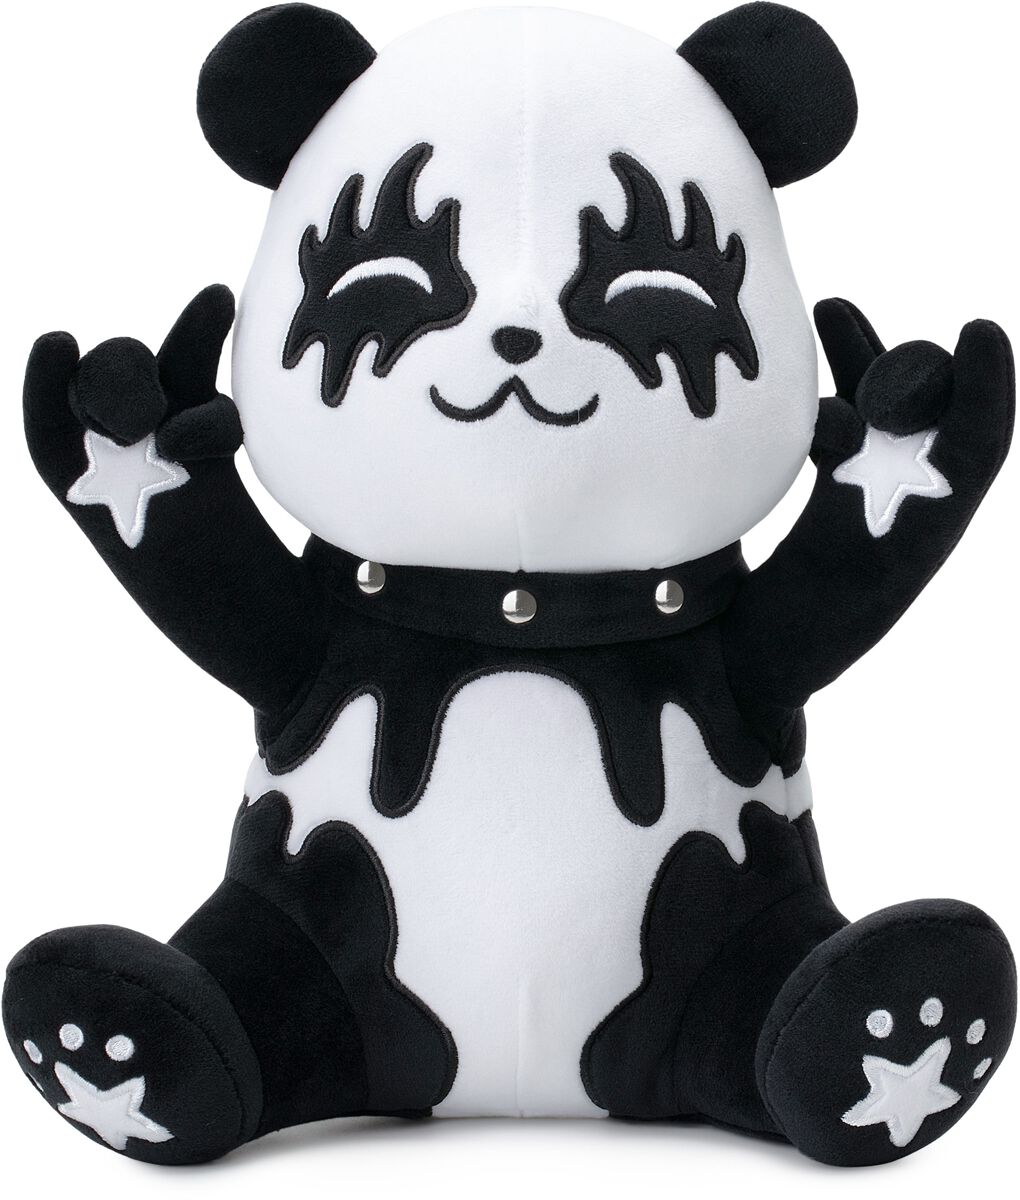 Corimori - Tin der Metal-Panda - Plüschfigur - weiß|schwarz